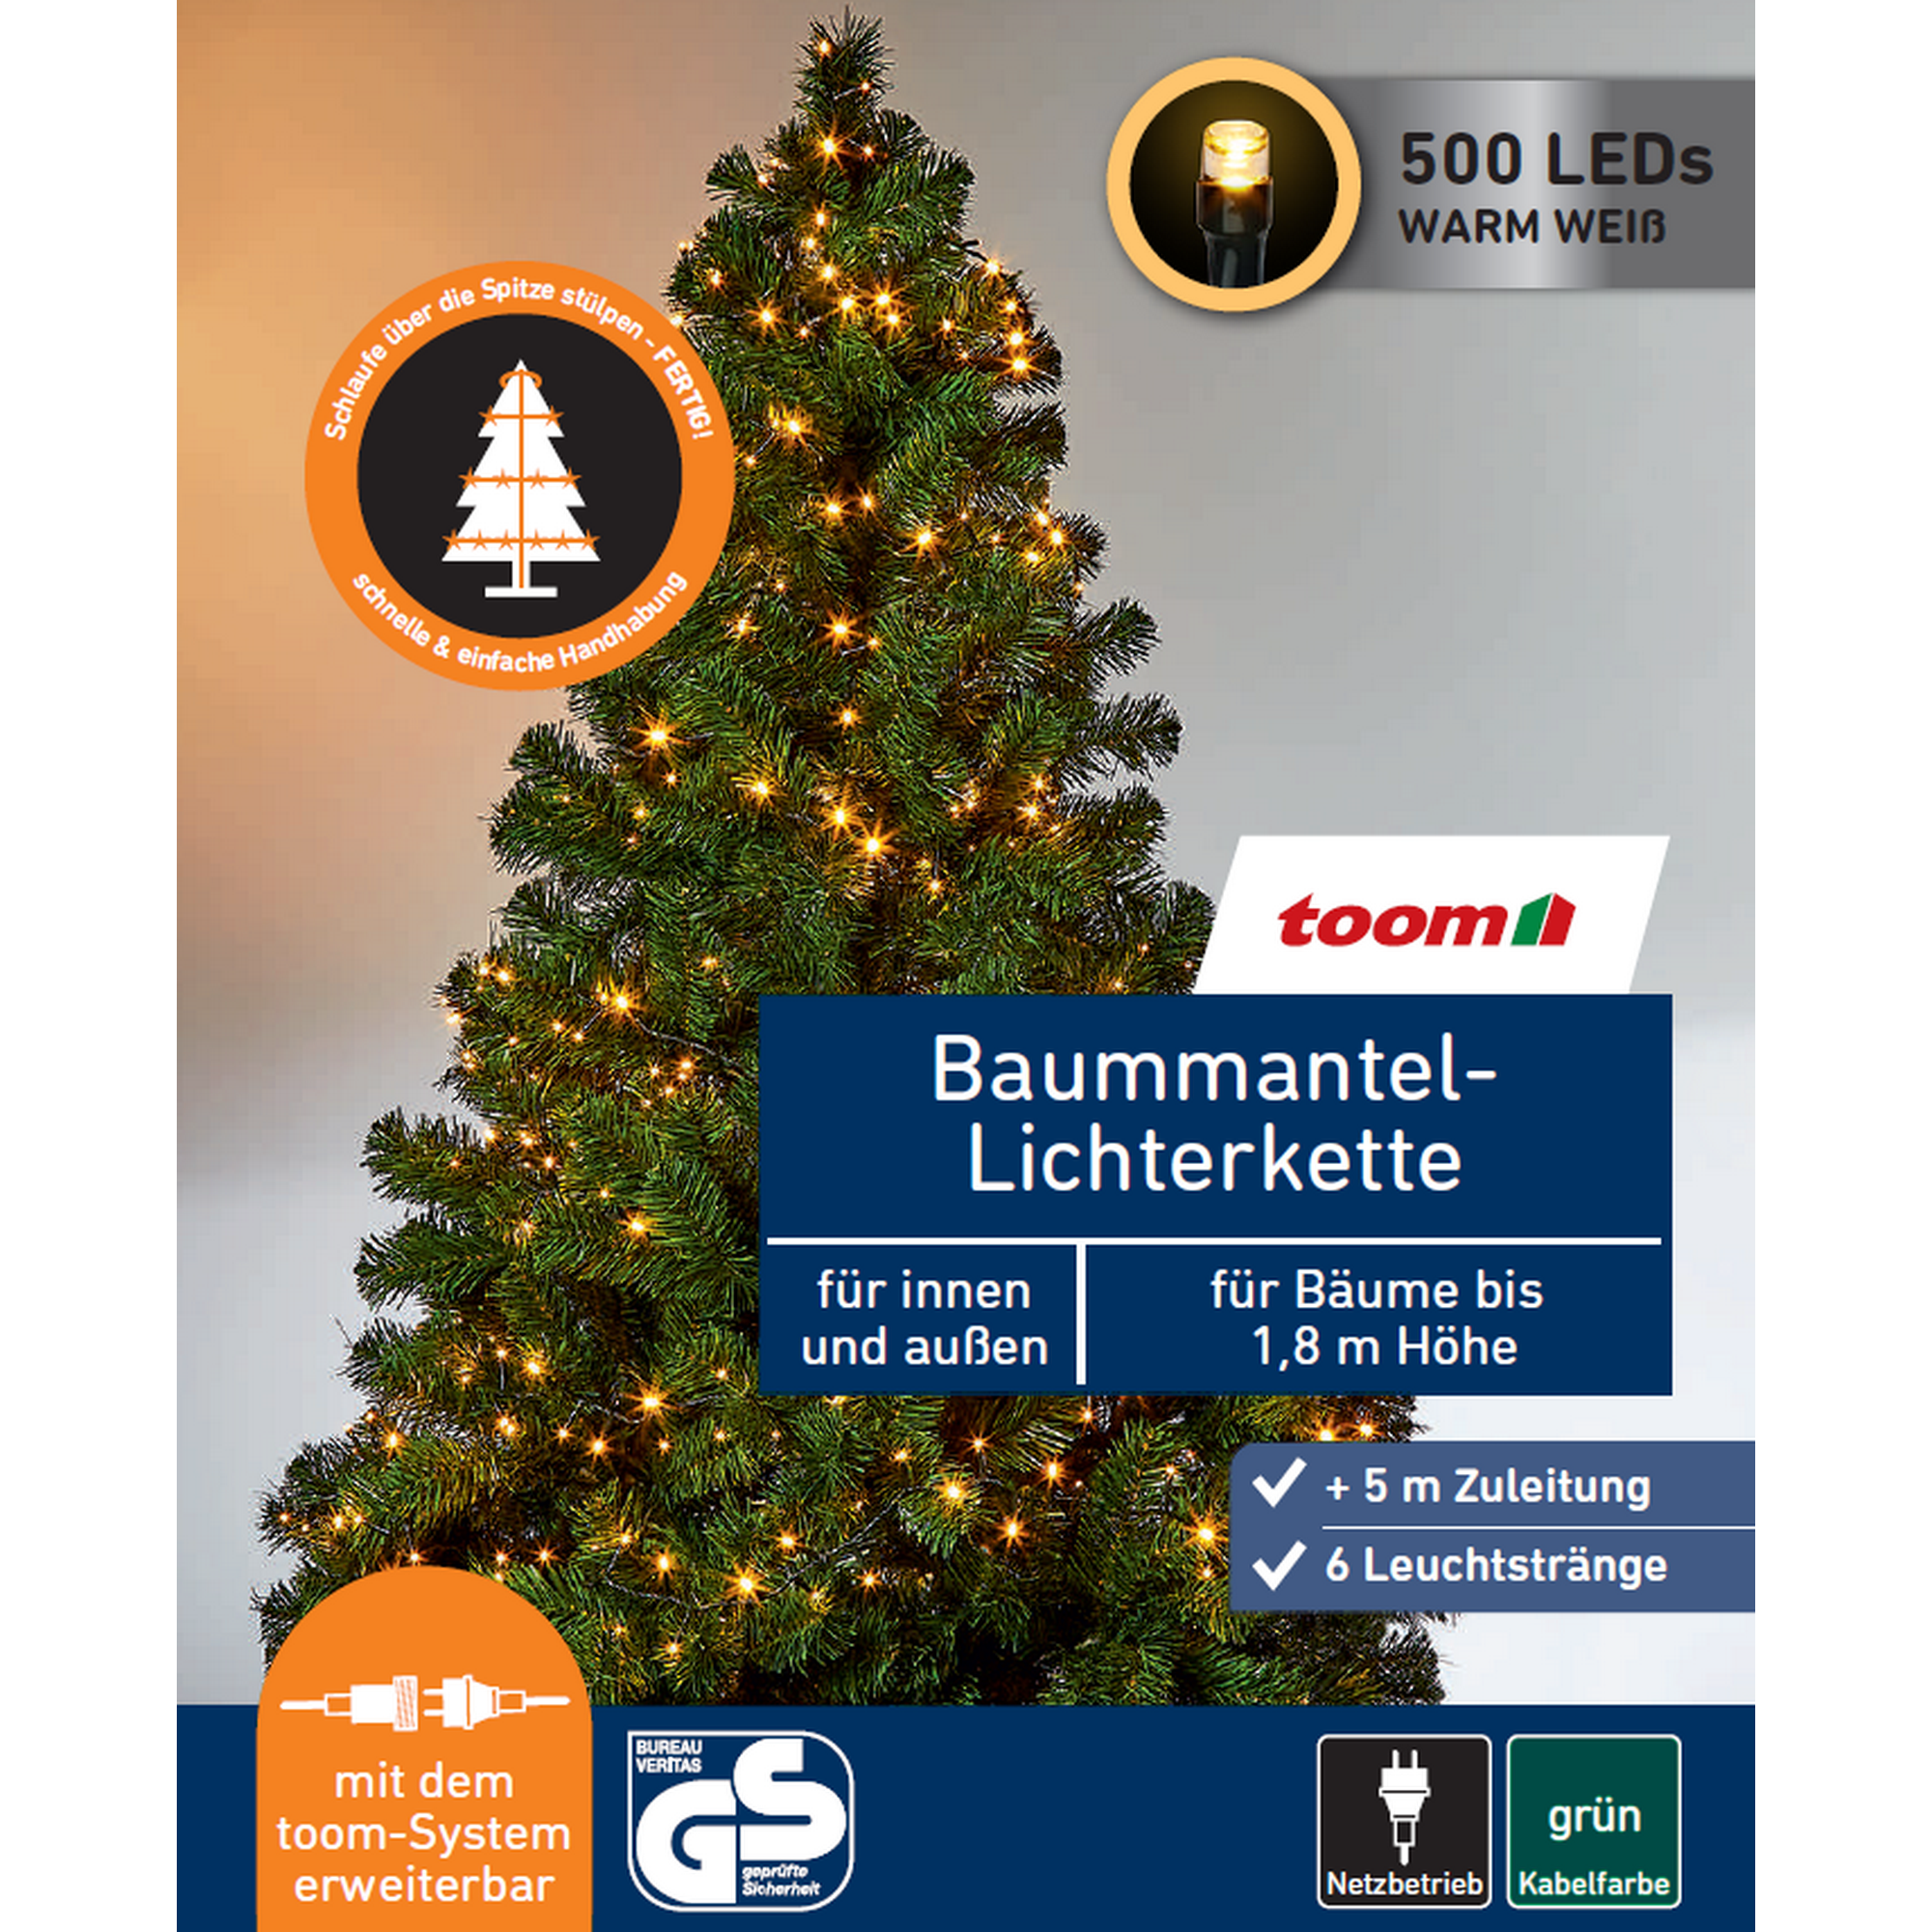 LED-Baummantel-Lichterkette 500 LEDs warmweiß 6 Stränge 150 cm + product picture